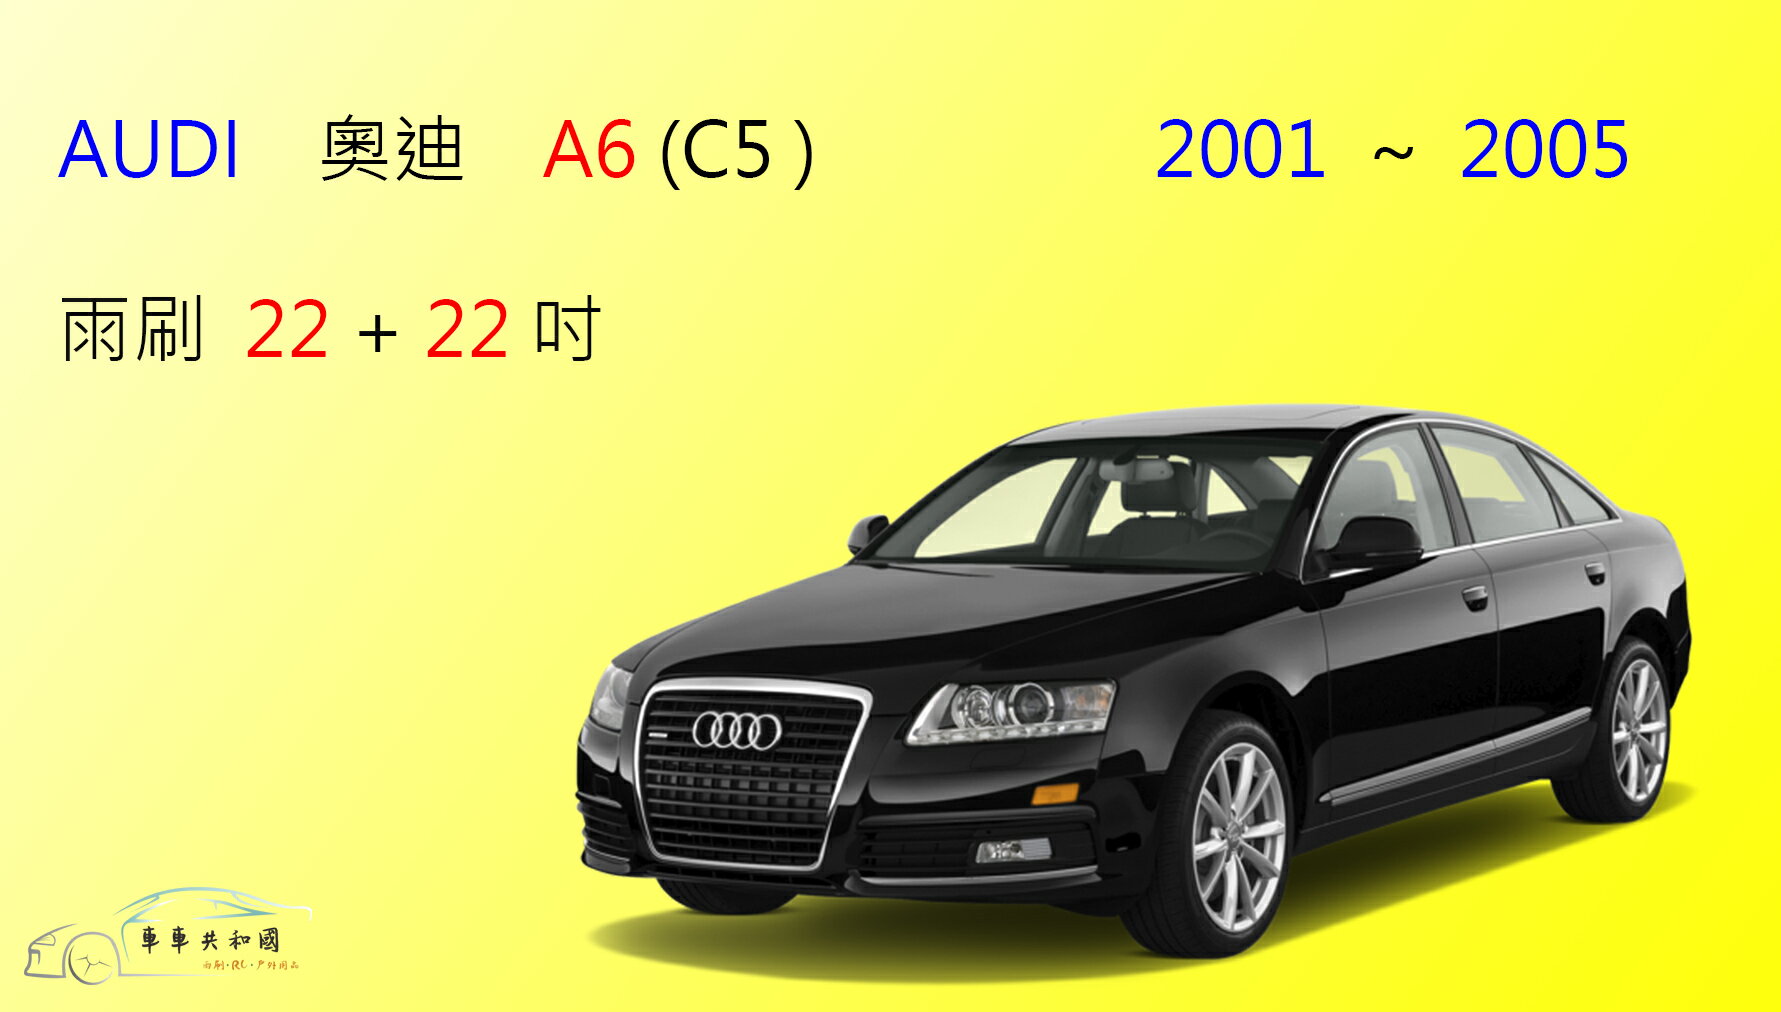 【車車共和國】Audi 奧迪 A6 (C5) 軟骨雨刷 前雨刷 雨刷錠 2001 ~ 2005